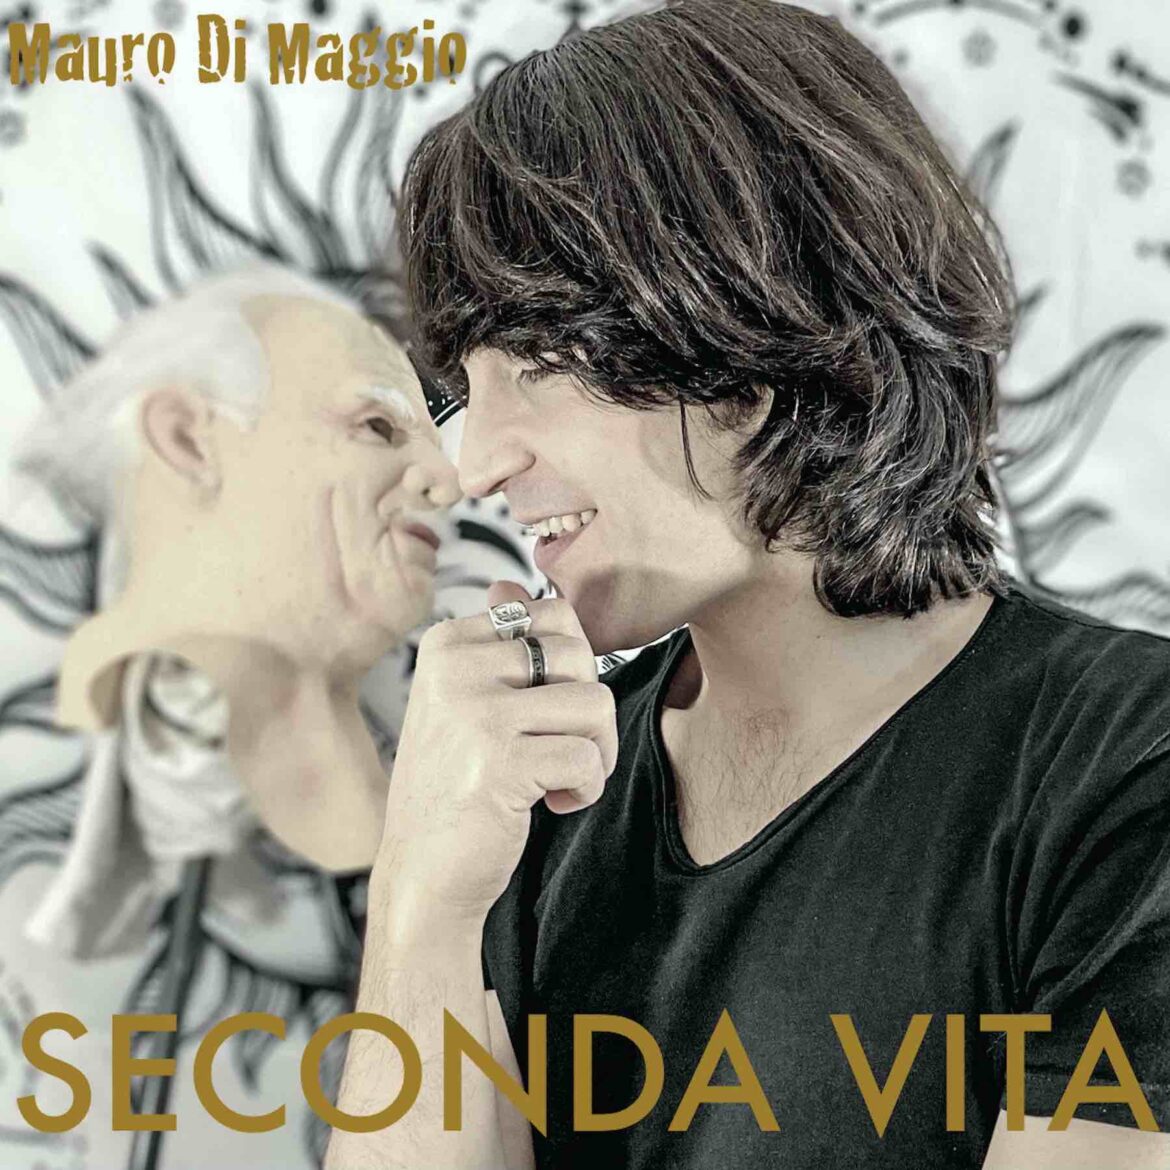 Esce oggi in digitale “Seconda Vita”, il nuovo singolo di Mauro di Maggio